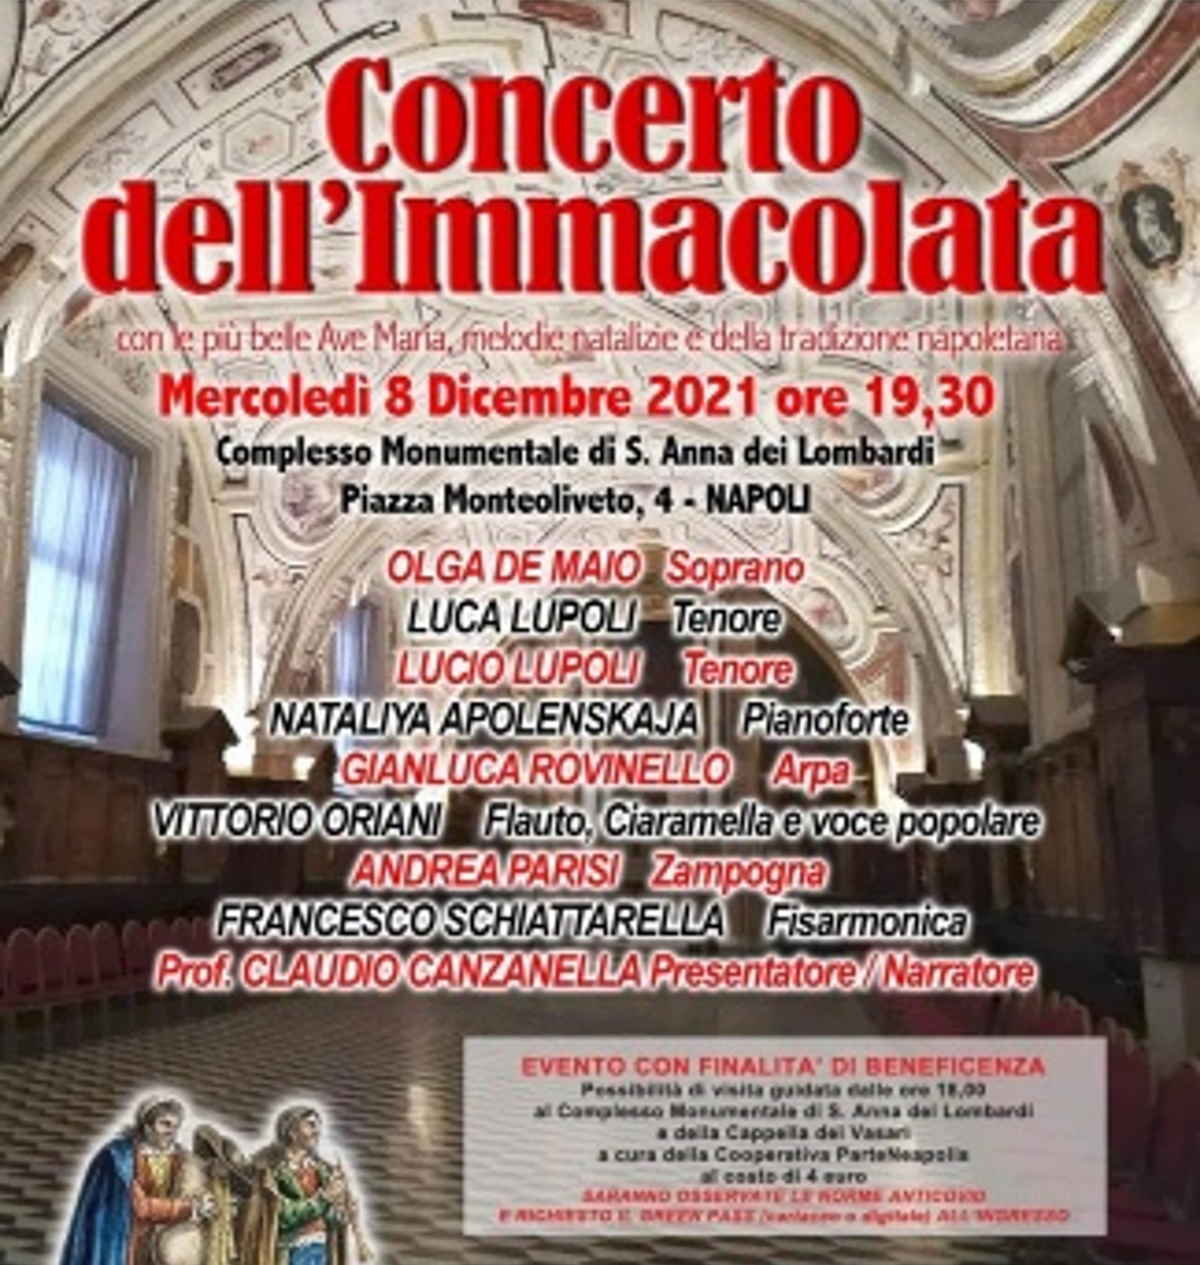 Tradizionale Concerto dell'Immacolata 2021 a Napoli